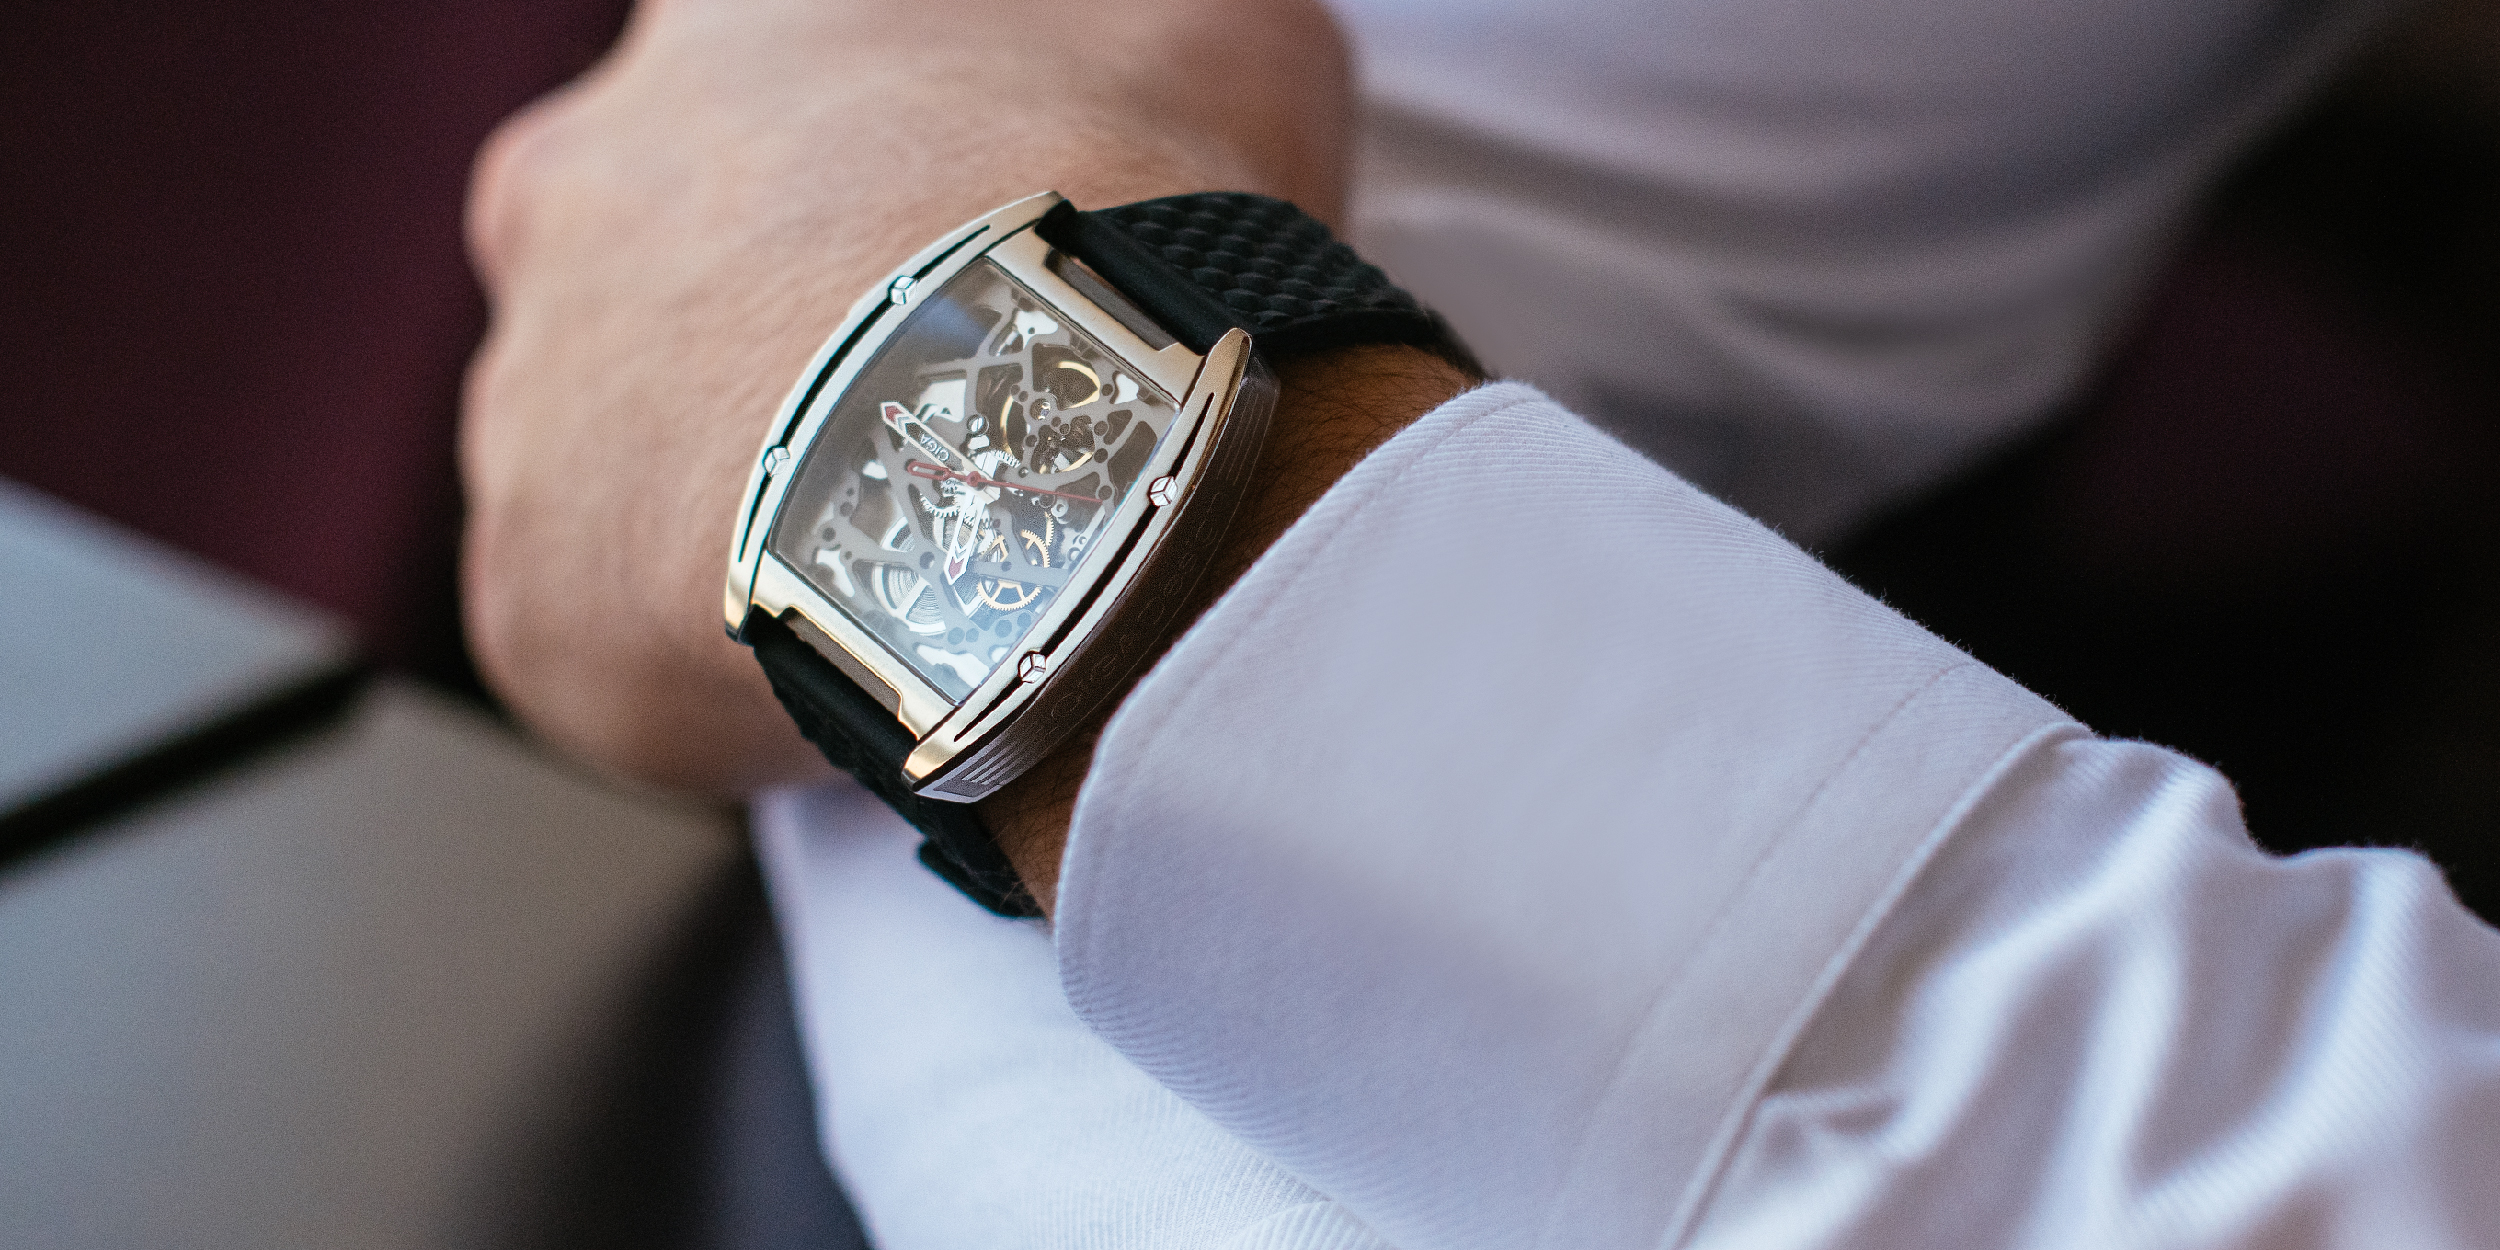 チタン製・機械式腕時計「CIGA Design」 裏表スケルトン仕様で全ての 